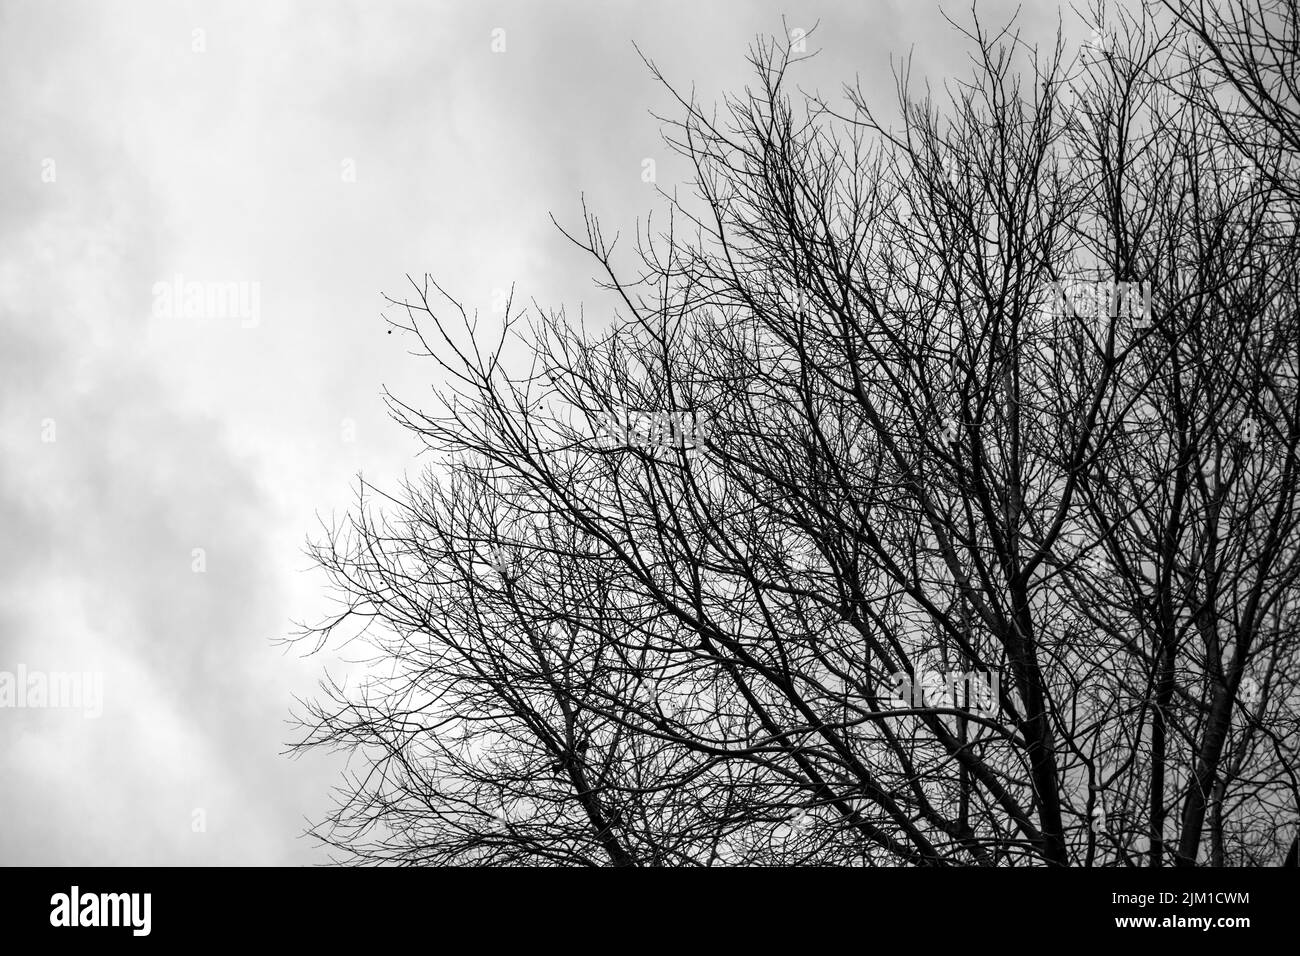 Rami di un albero senza foglie che si estendono come dendriti dal basso a destra dell'immagine contro un cielo nuvoloso come sfondo. Foto Stock